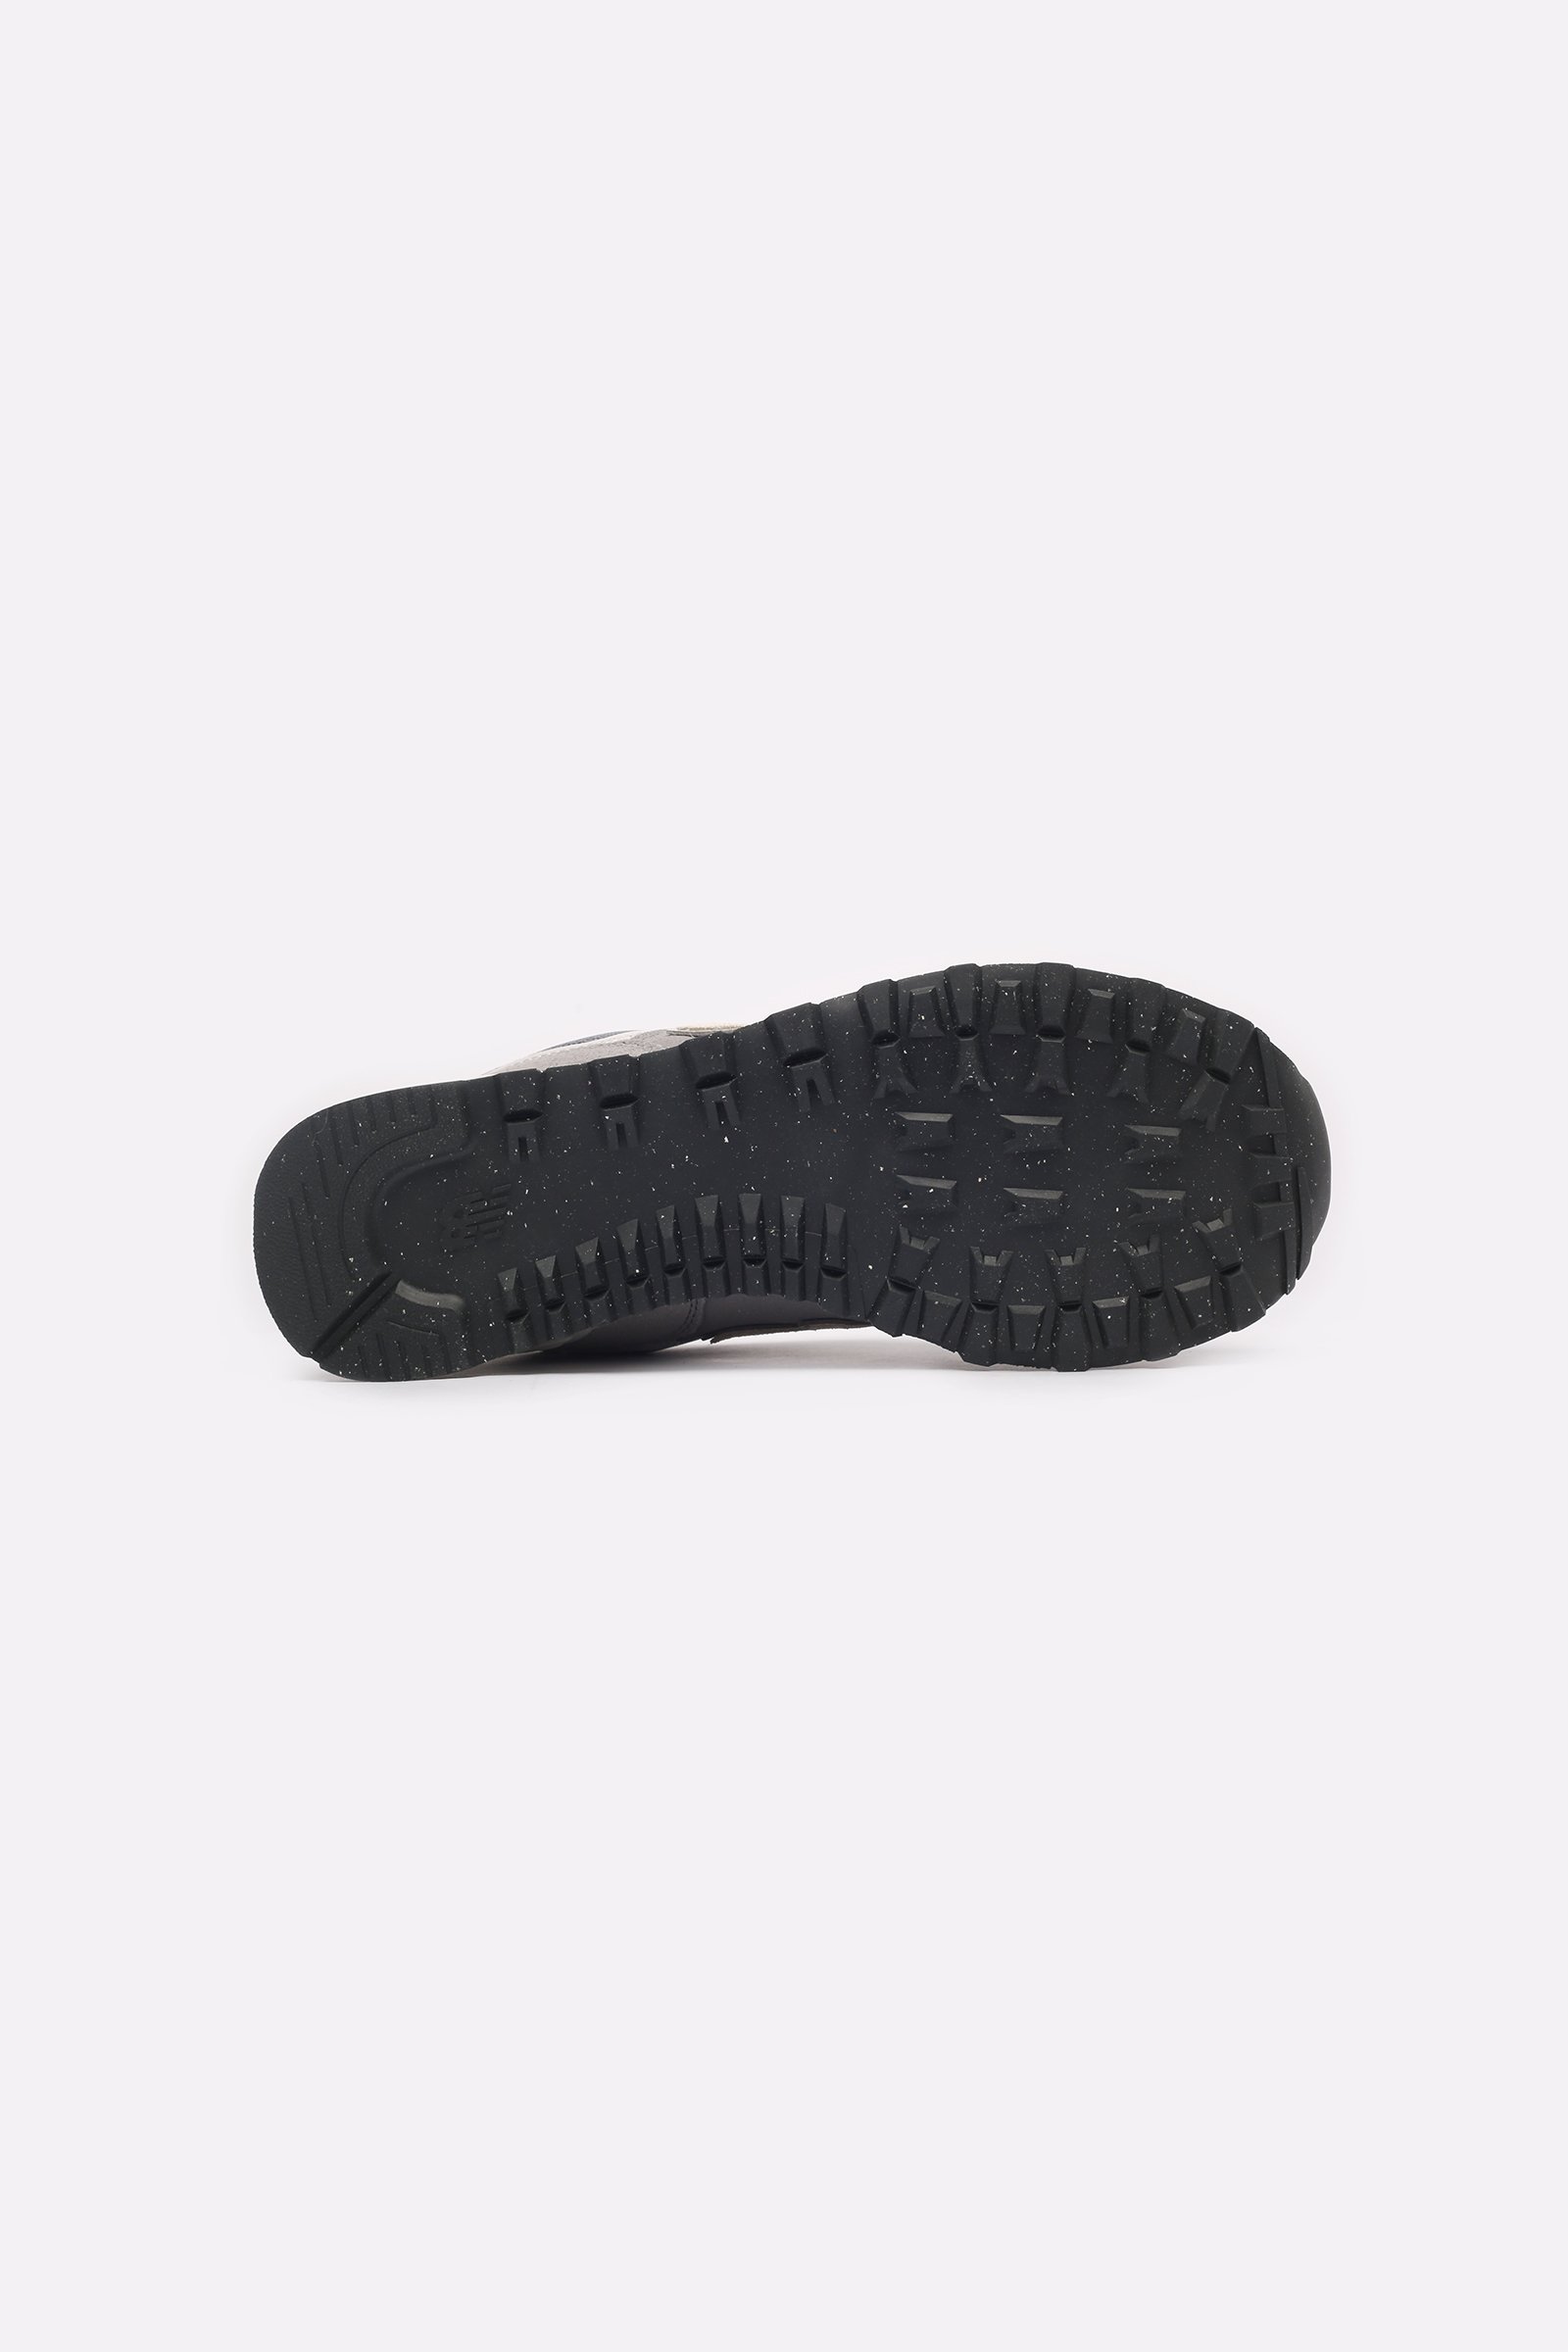 мужские кроссовки New Balance 574  (U574UL2)  - цена, описание, фото 5